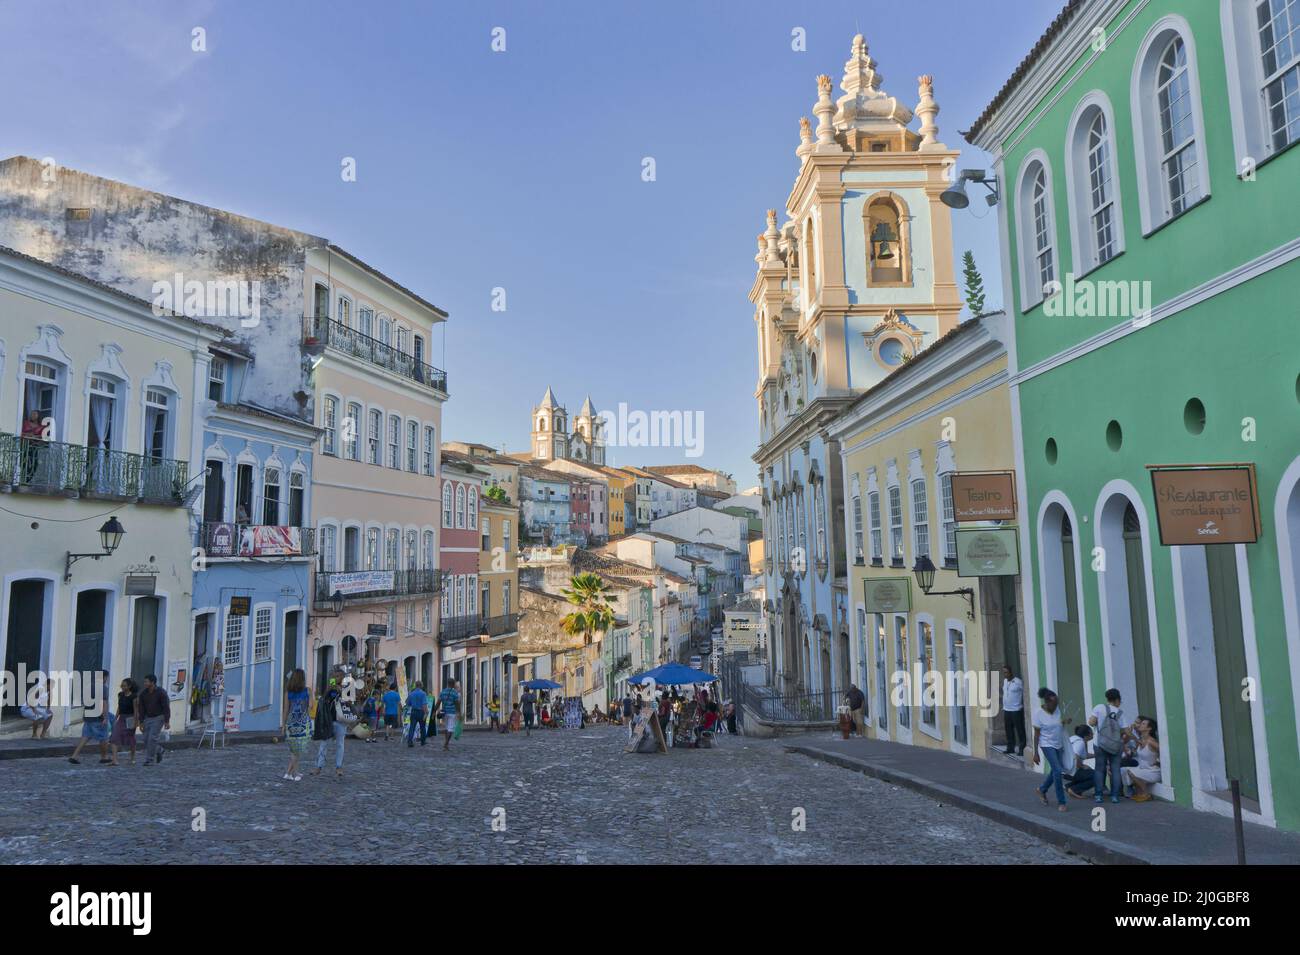 Salvador de Bahia, vue Pelourinho avec des bâtiments colorés, Brésil, Amérique du Sud Banque D'Images